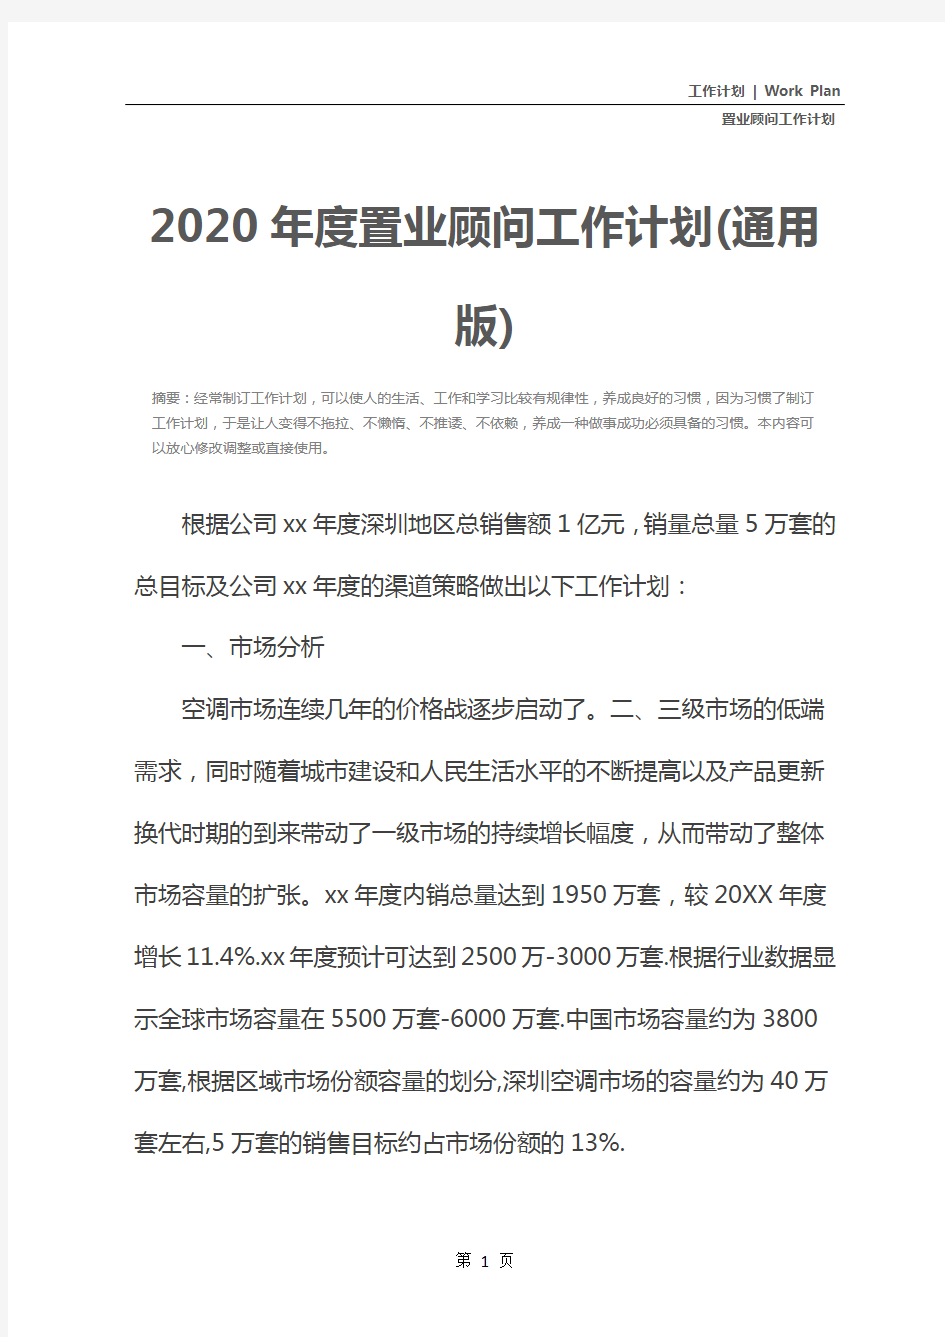 2020年度置业顾问工作计划(通用版)